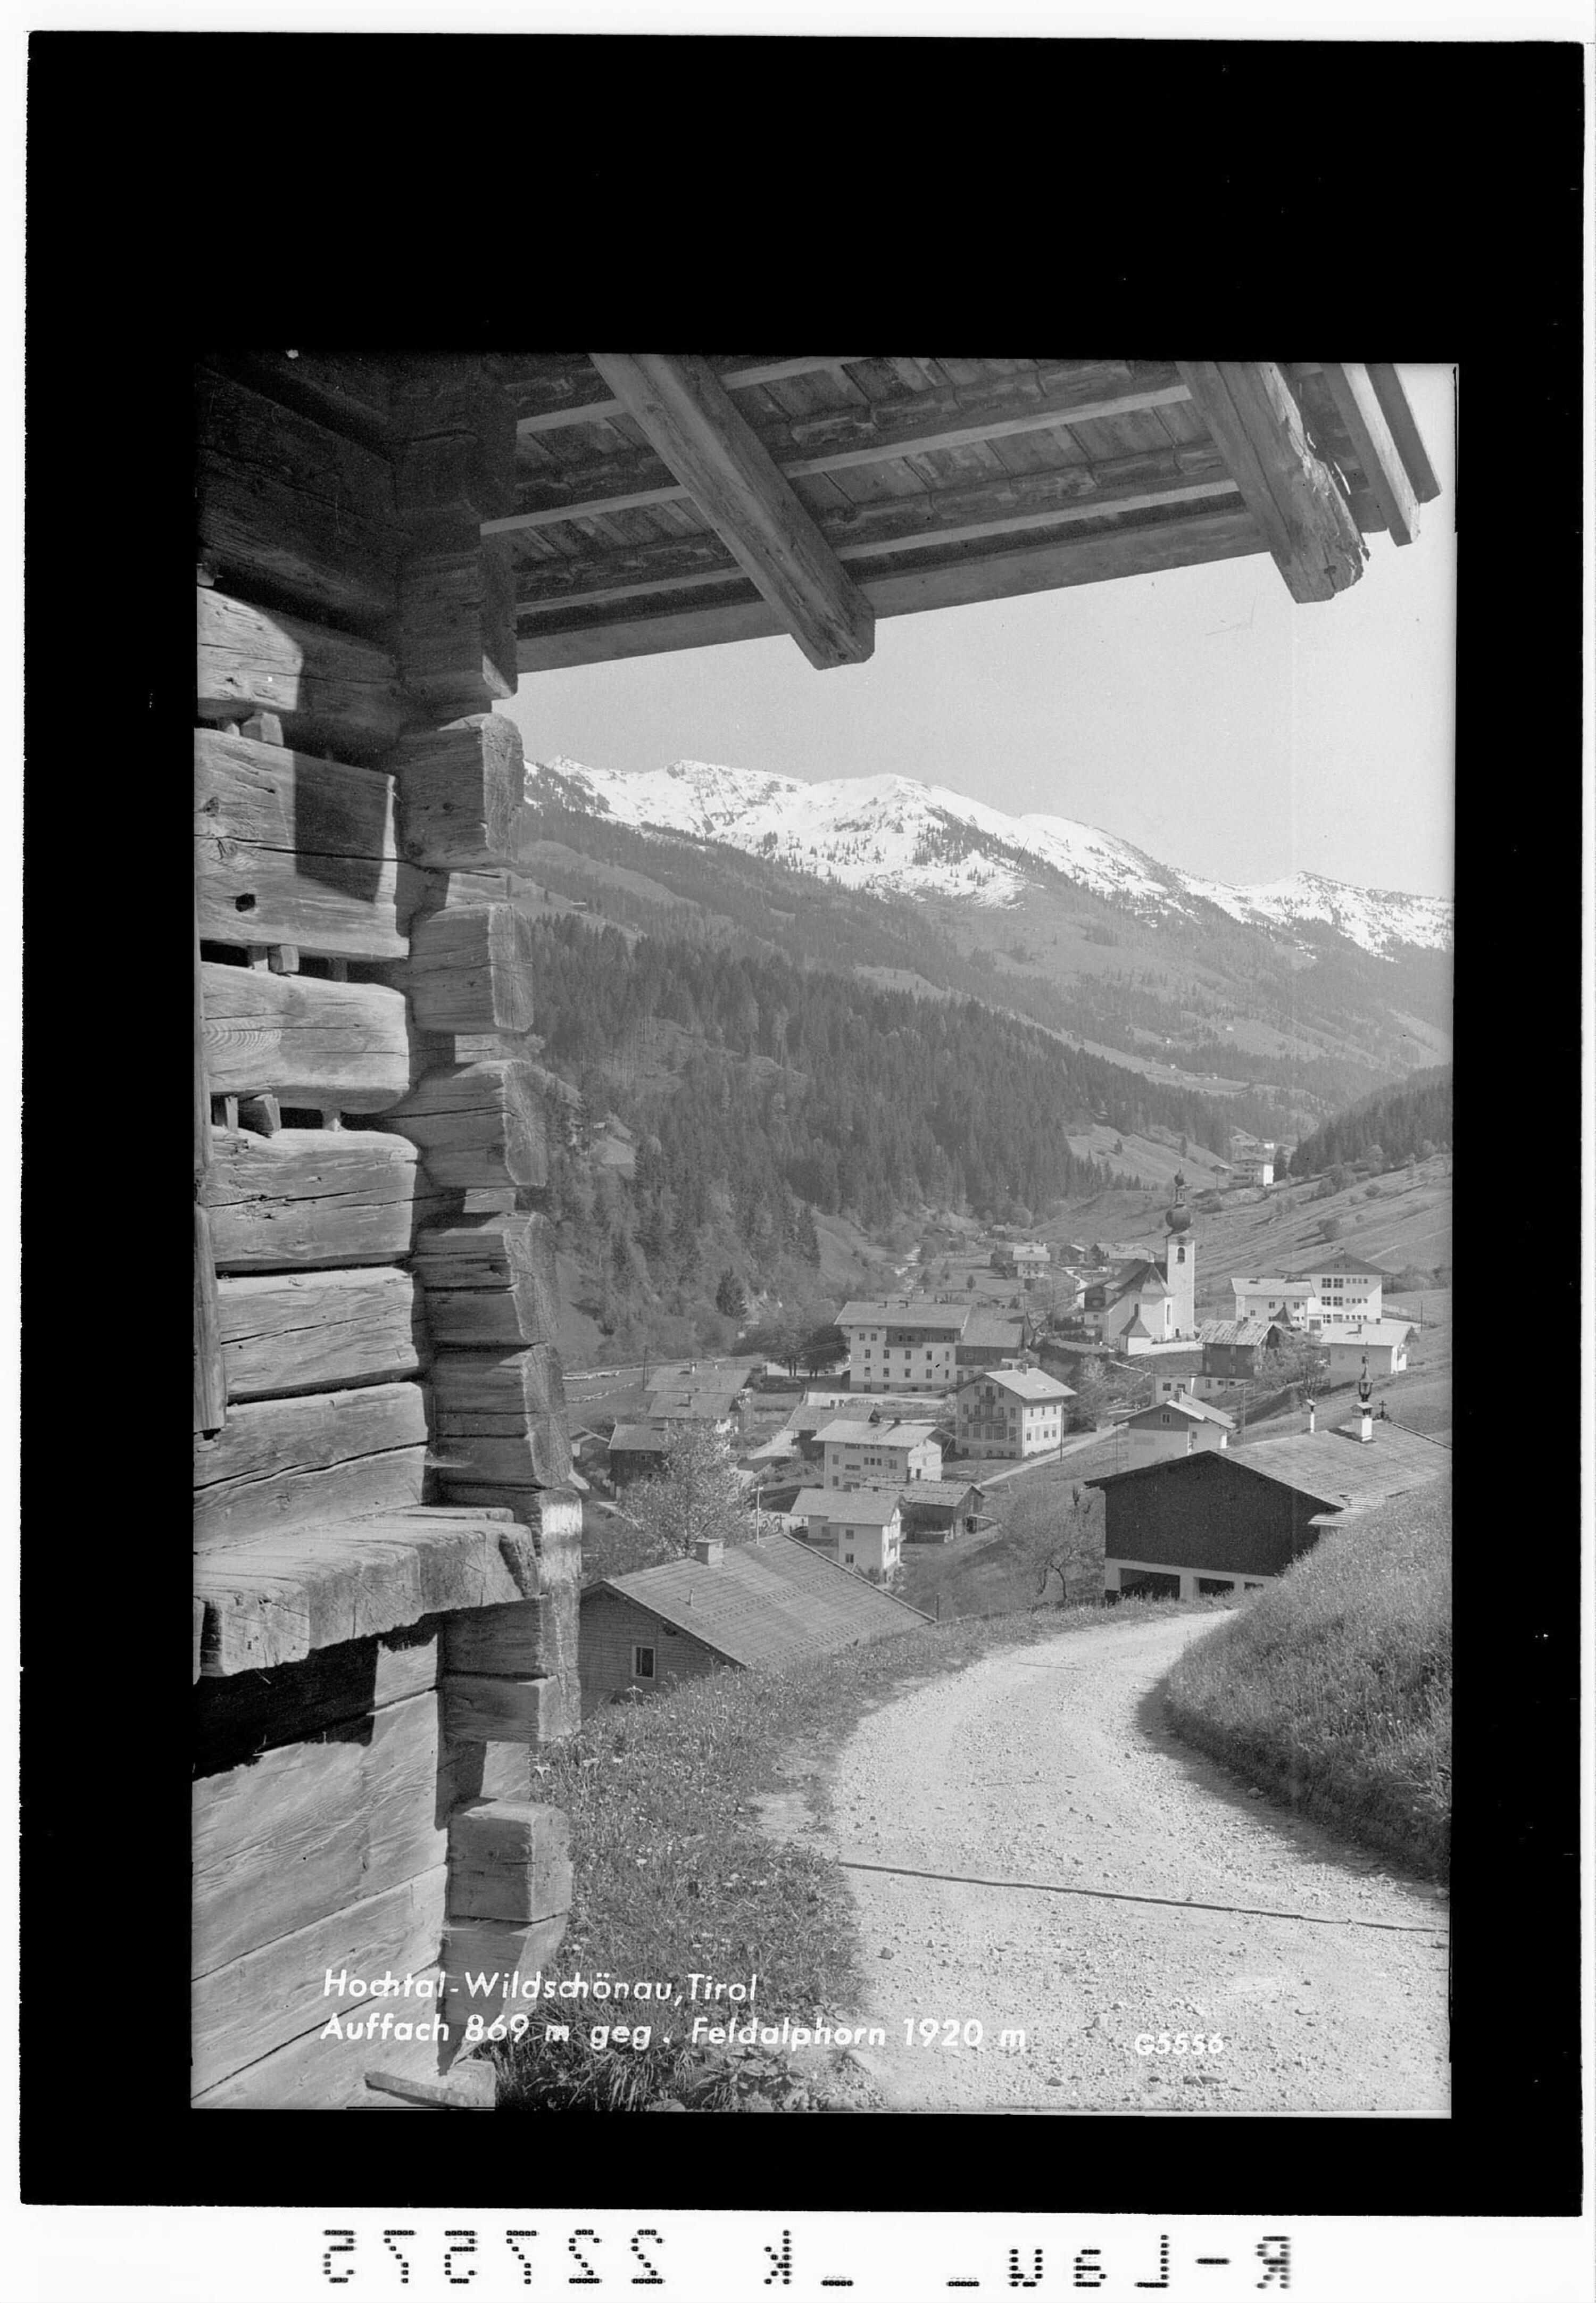 Hochtal Wildschönau / Tirol / Auffach 869 m gegen Feldalphorn 1920 m></div>


    <hr>
    <div class=